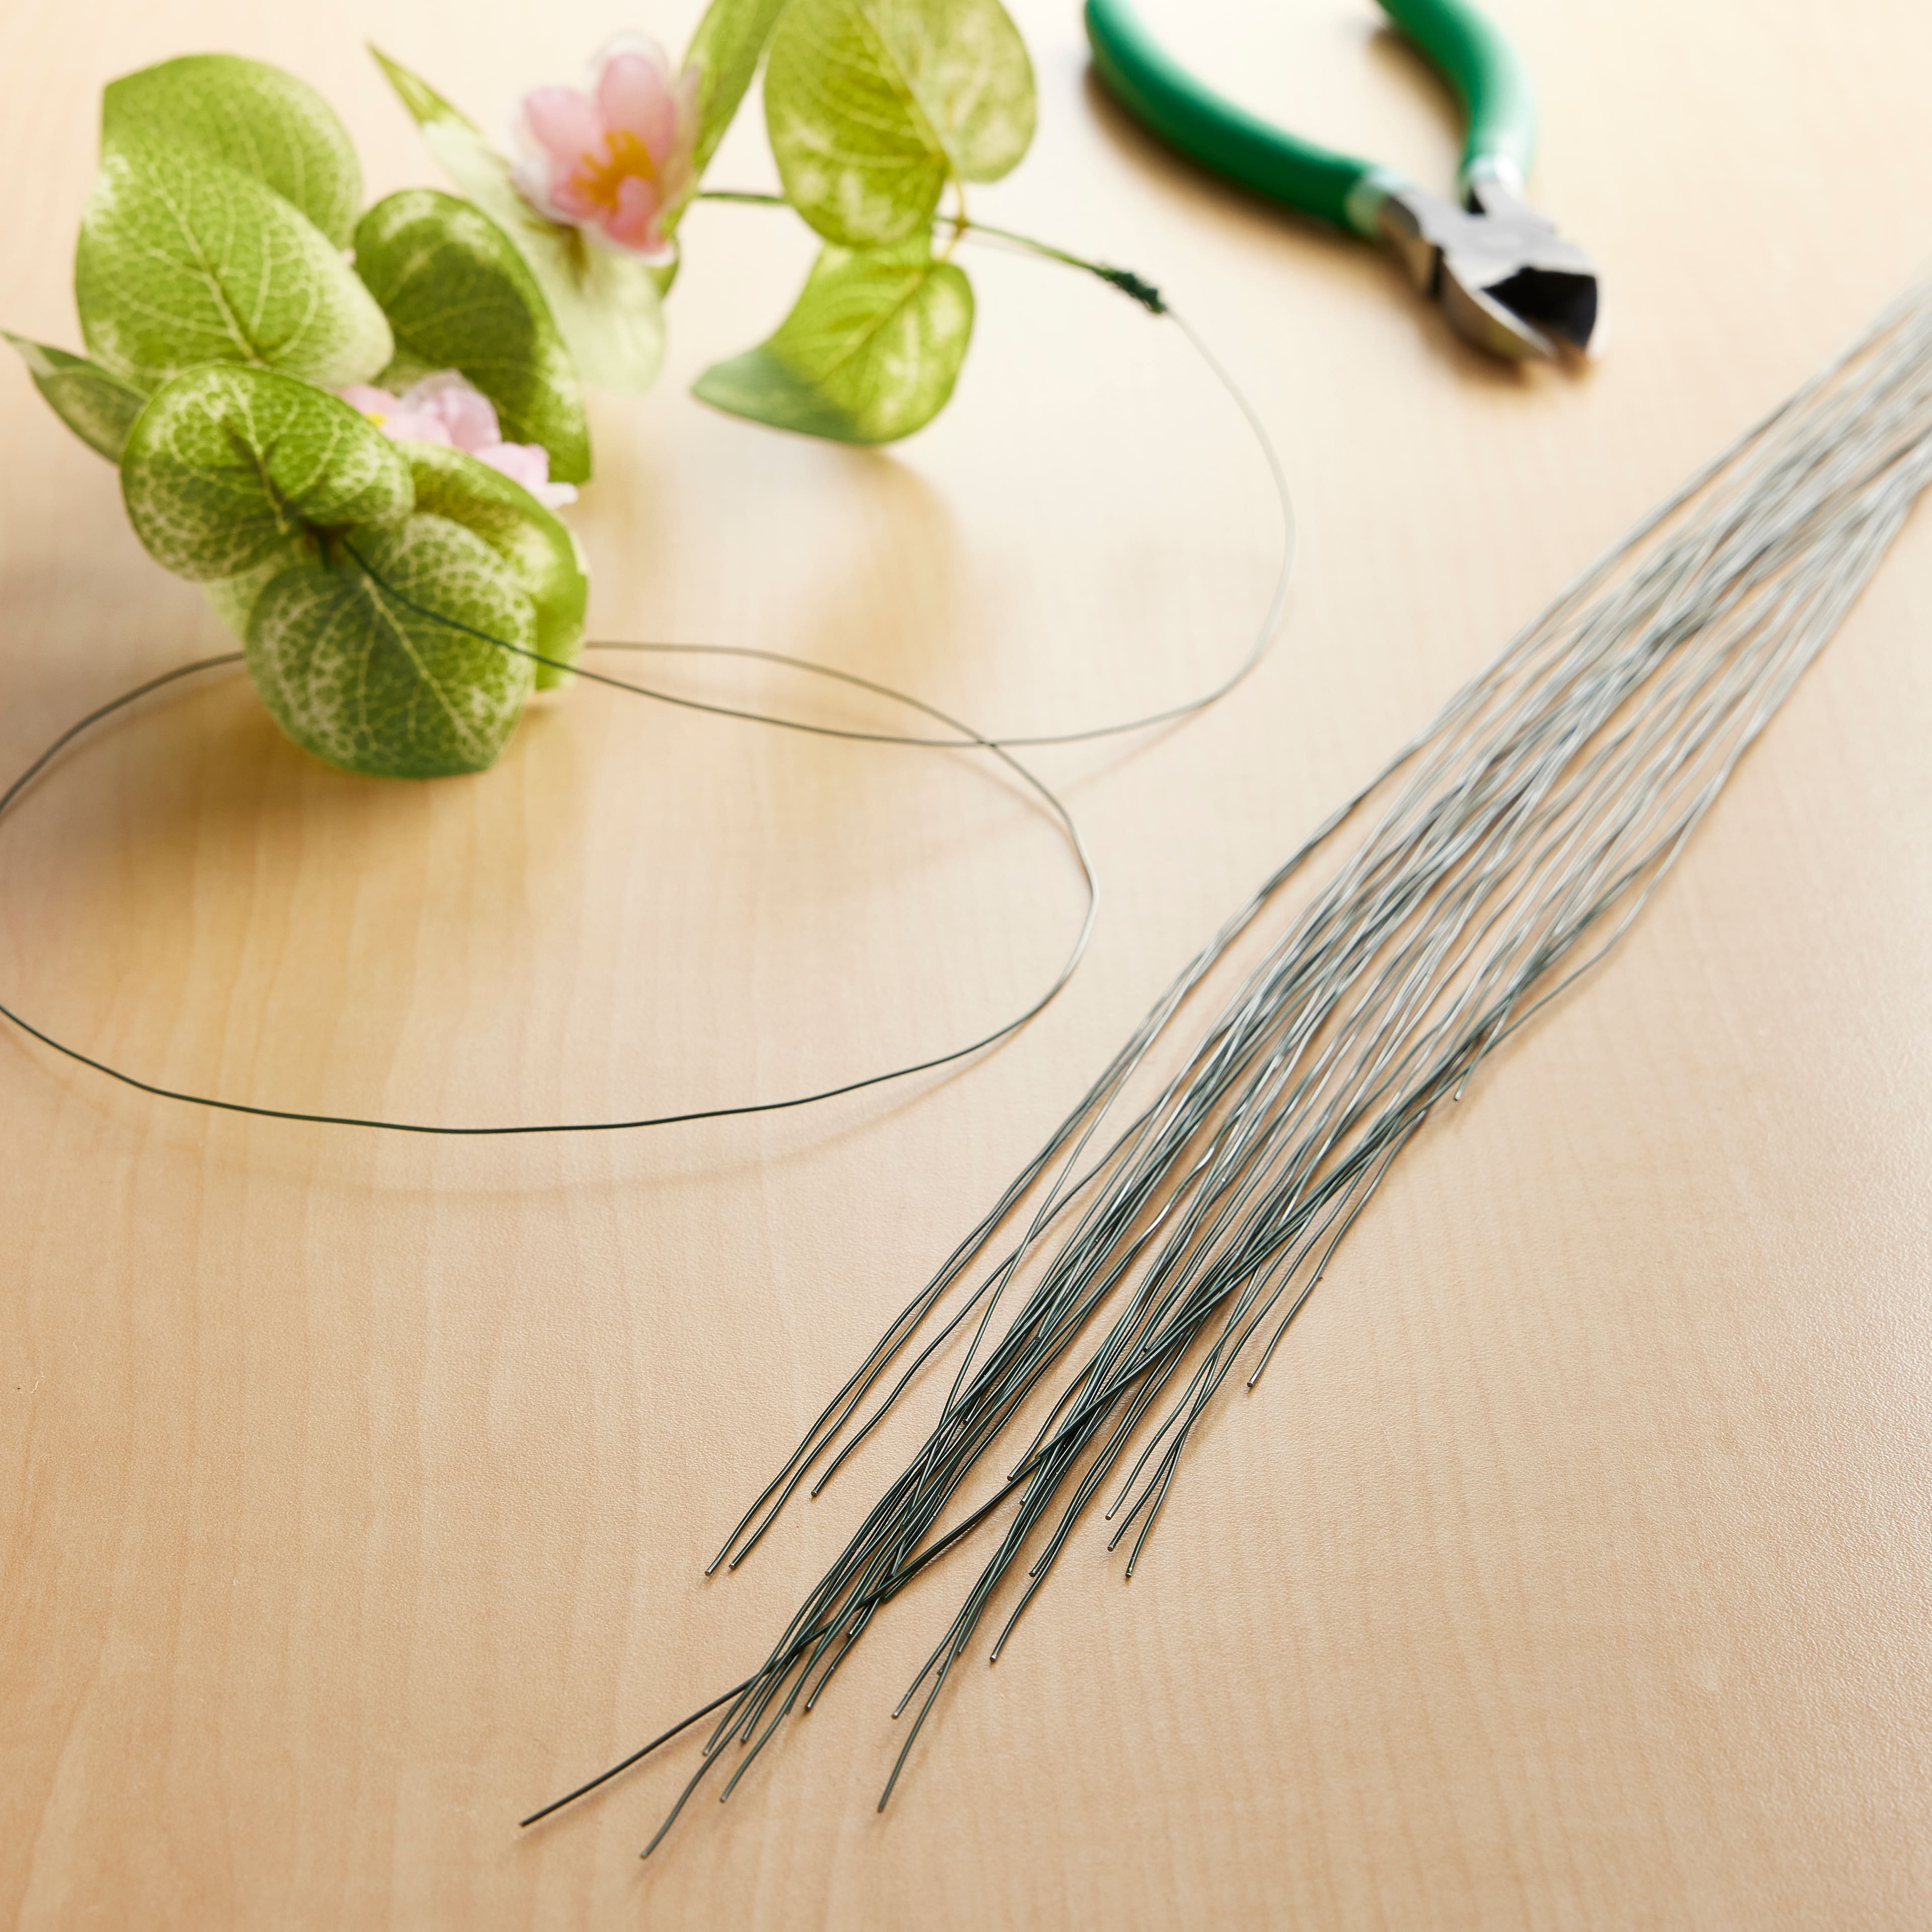 22 Gauge Green Floral Stem Wire 16 inch,50/Package – Meraki Floral Tools